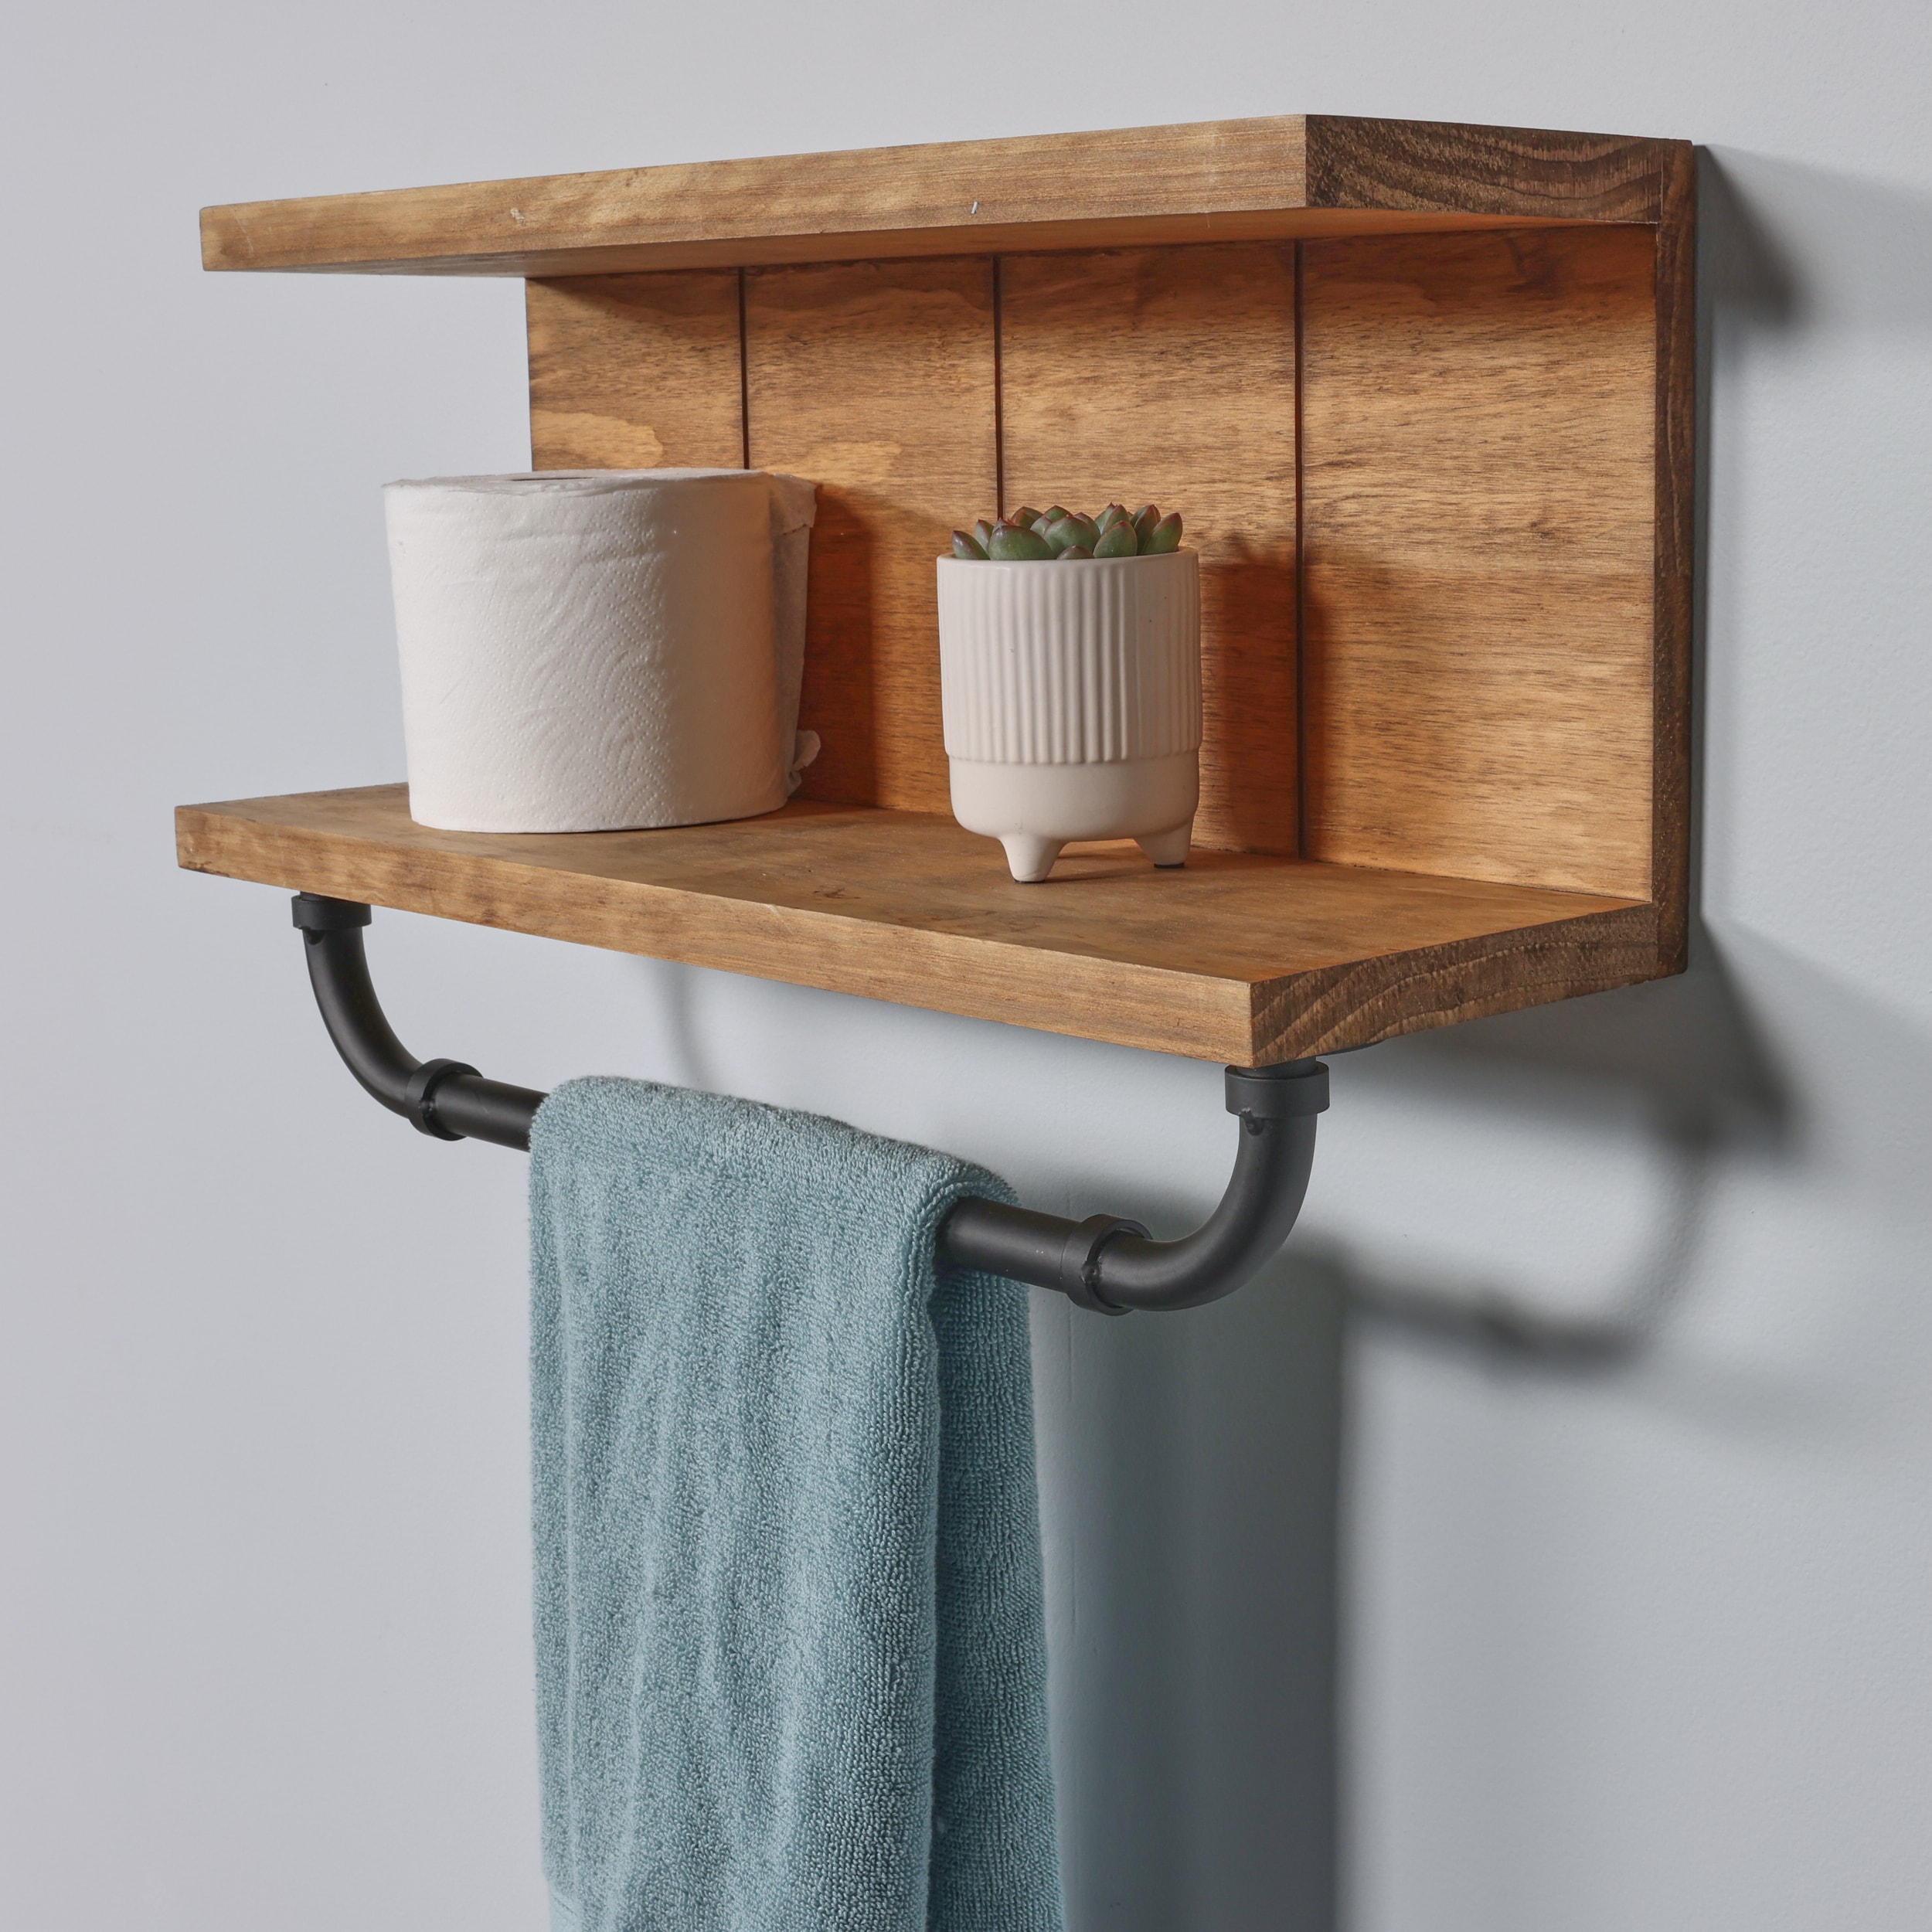 Modern Wooden Bathroom Shelves 